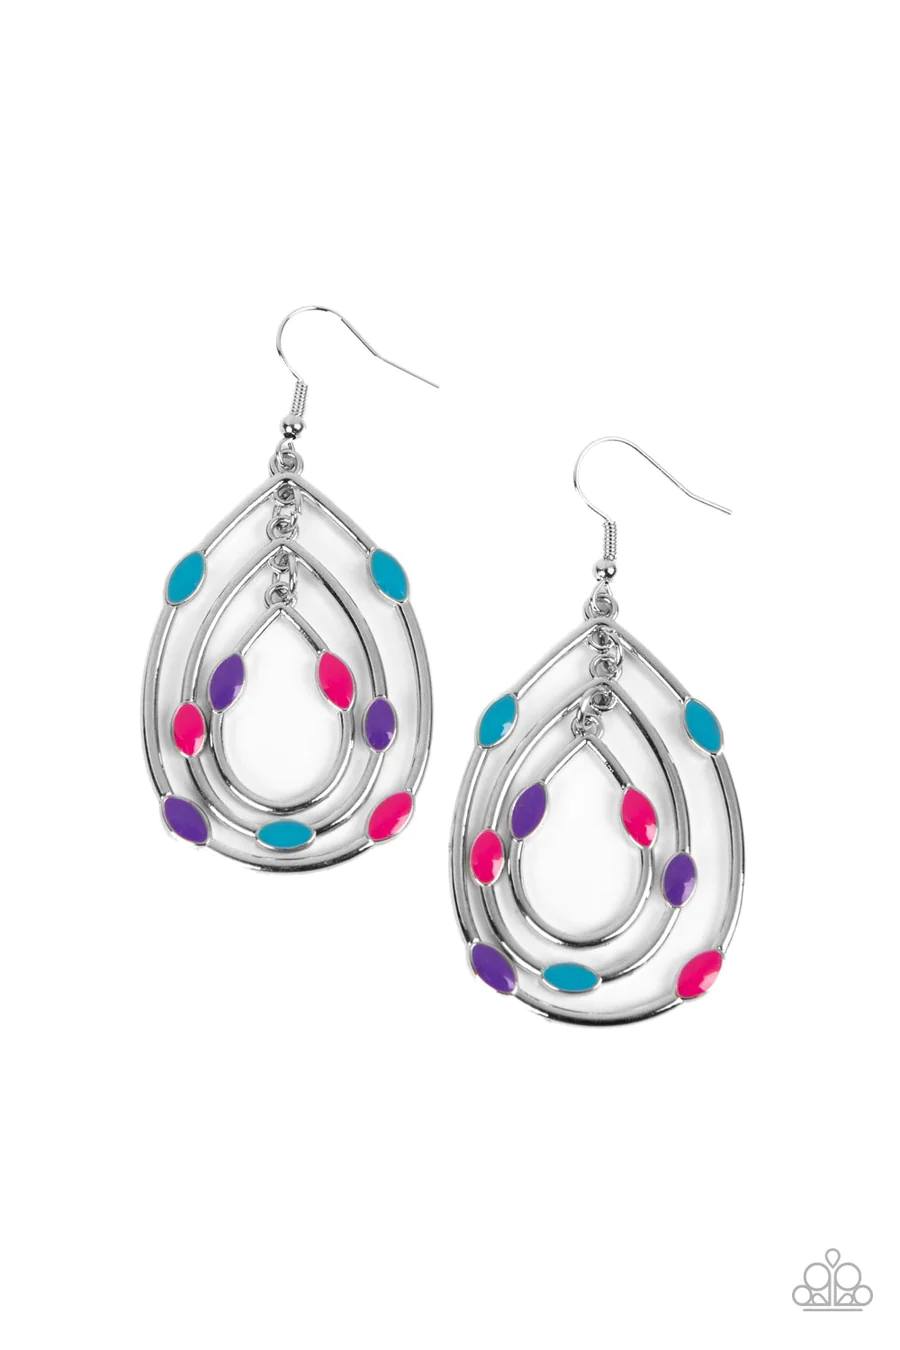 Rippling Rapport - Multi Blue Pink Purple Silver Teardrop Fishhook Earrings